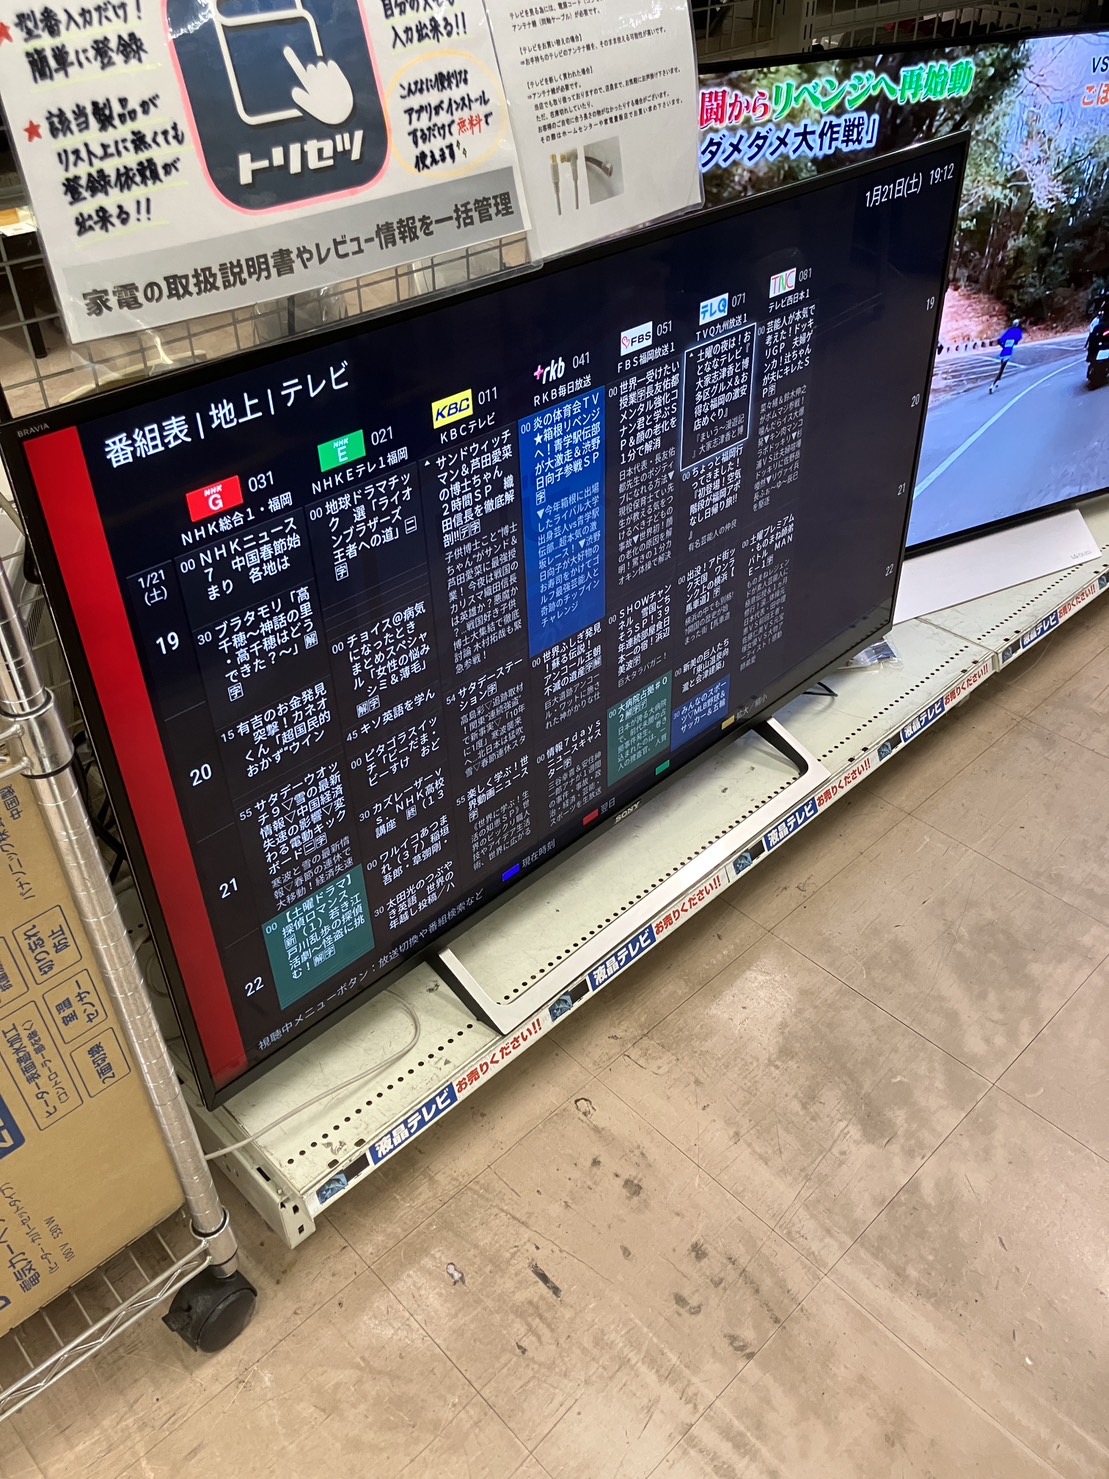 【SONY 49インチ液晶テレビ 2018年製 KJ-49X8000E 4K対応】買取致しました！⭐福岡市 早良区 リサイクルショップ リサイクルマート原店⭐ - リサイクルマートは現在冷蔵庫の買取、家具の買取強化中です！お気軽にお問い合わせください。